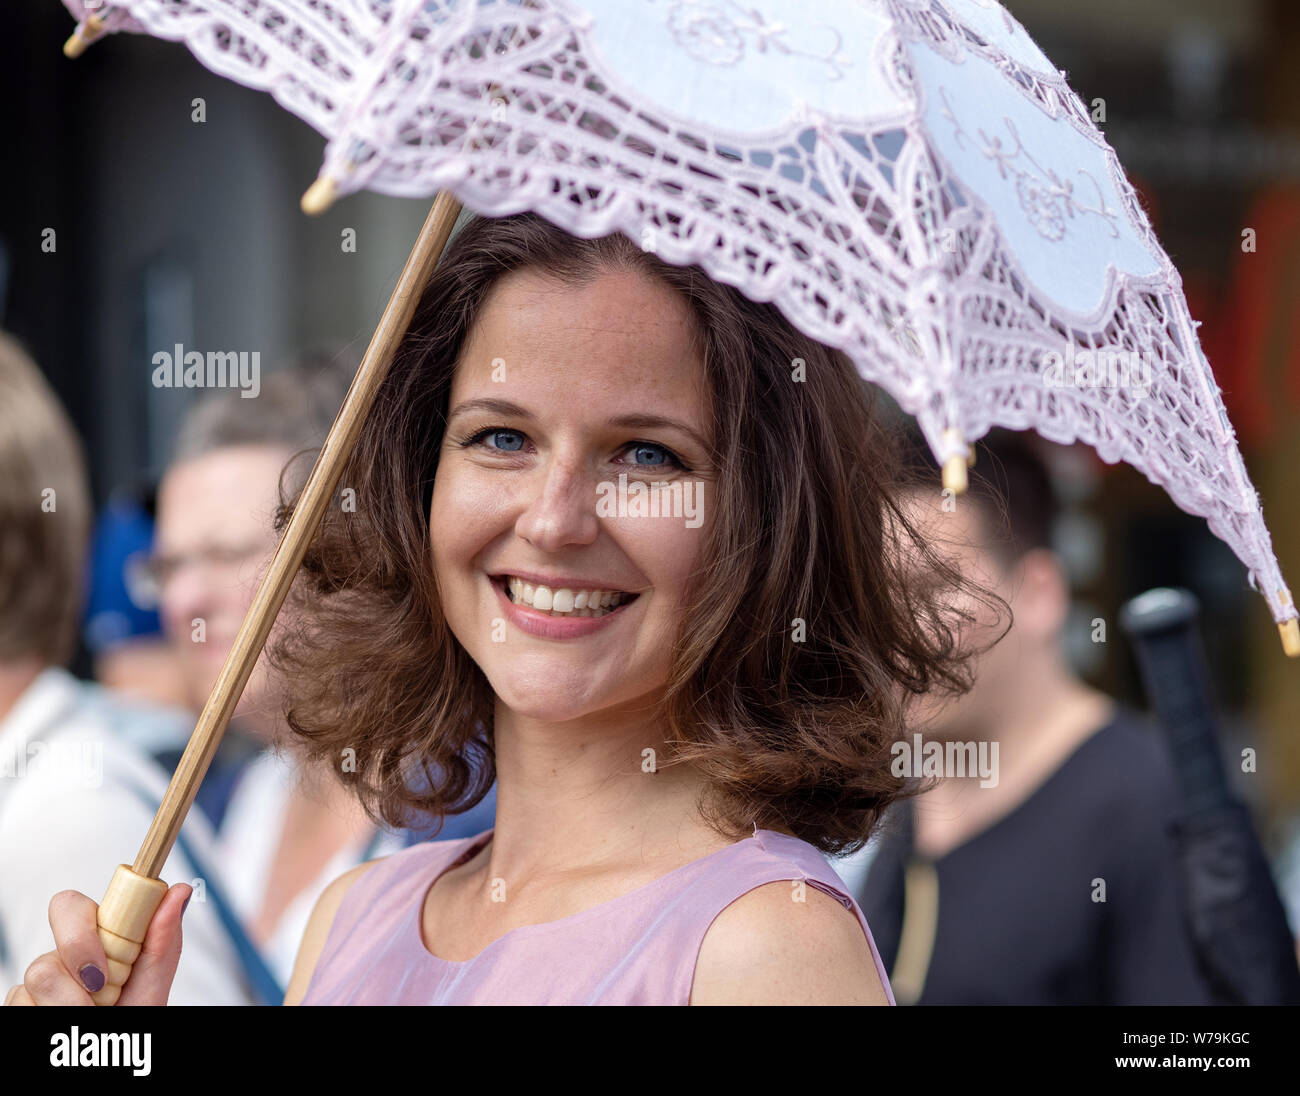 Femmina performer di strada con il volto sorridente e bianco brolly, Edinburgh Festival Fringe 2019 - Il Royal Mile di Edimburgo, Scozia, Regno Unito. Foto Stock